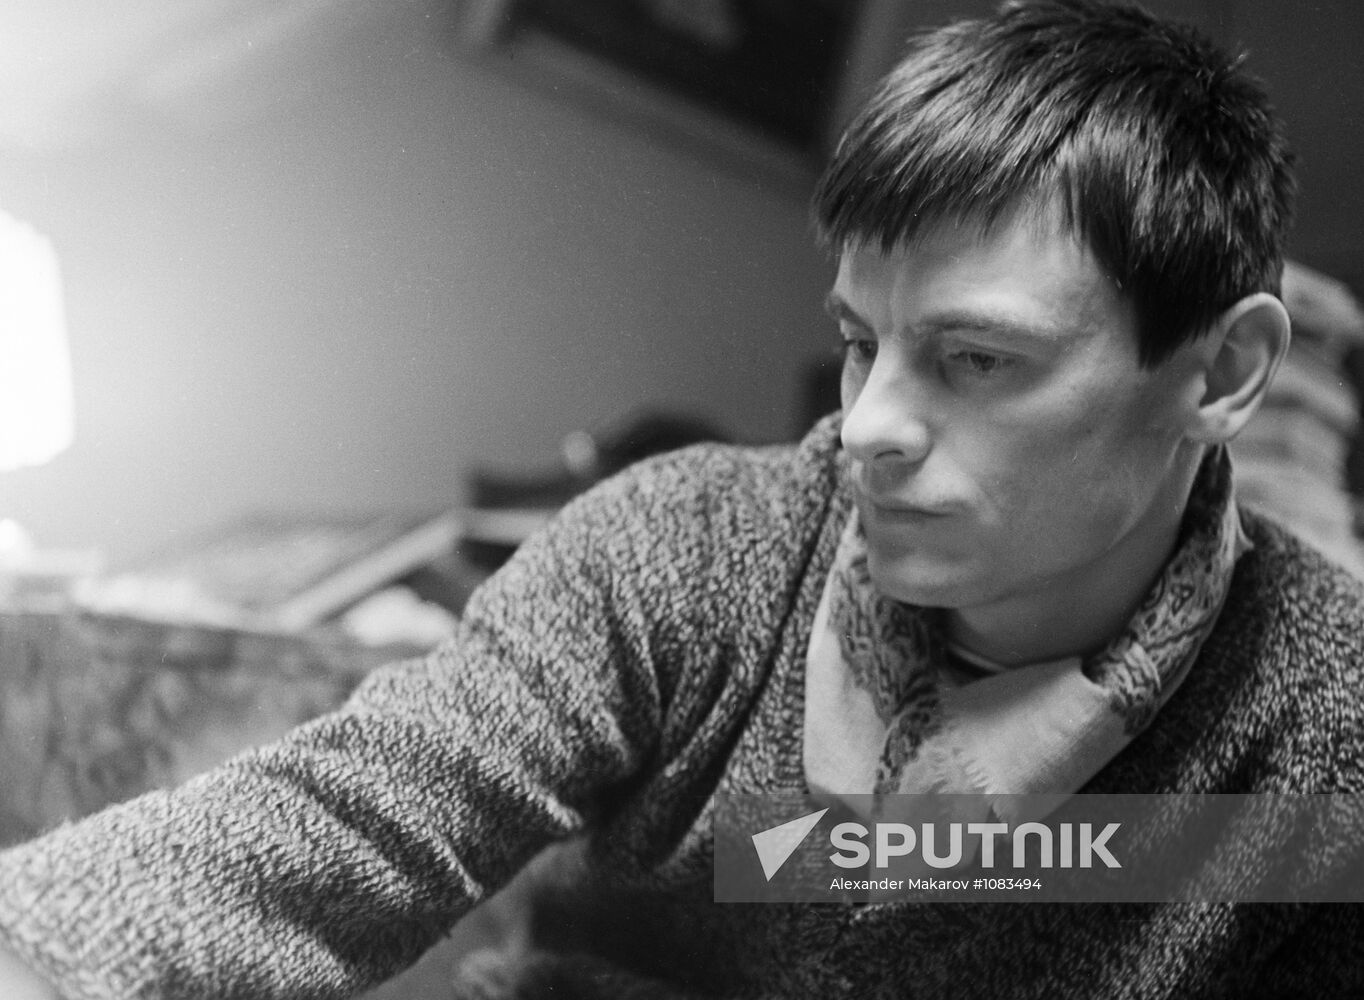 Film director Andrei Tarkovsky